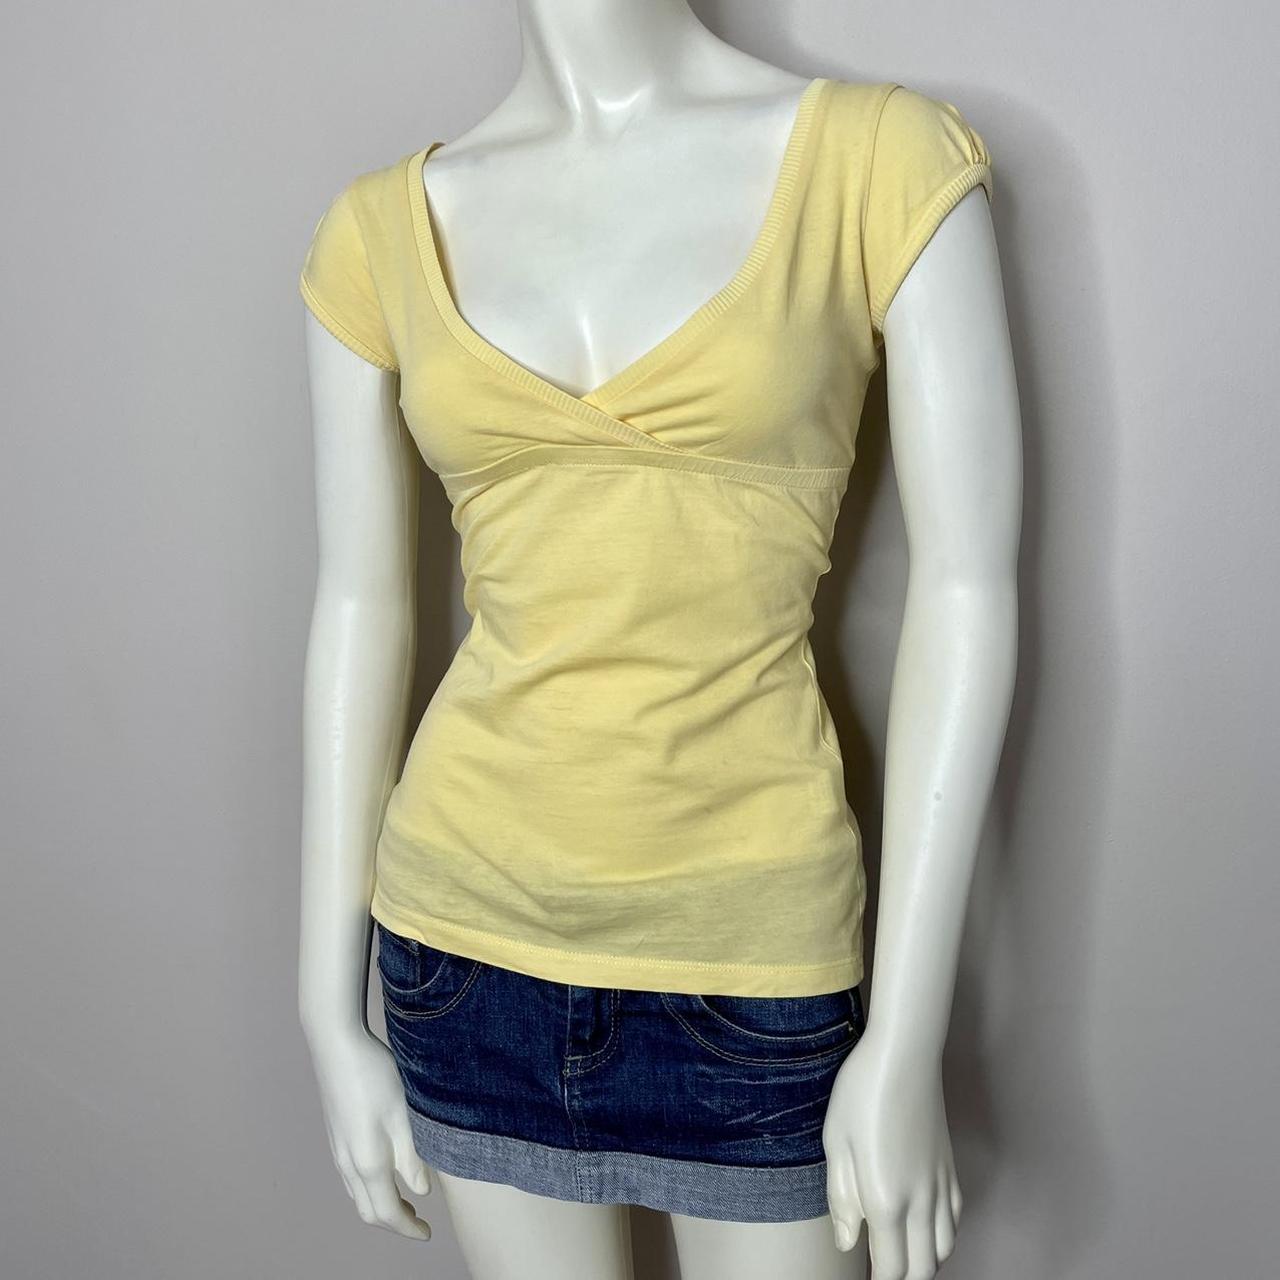 Bershka Women's Yellow T-shirt | Depop